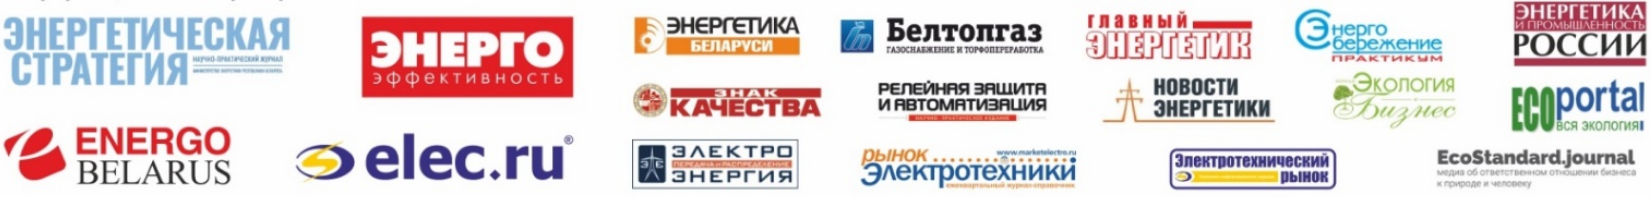 Освещение мероприятий форума в белорусских и зарубежных средствах массовой информации будут обеспечивать 18 информационных партнеров, представляющих ведущие печатные издания и интернет-порталы.